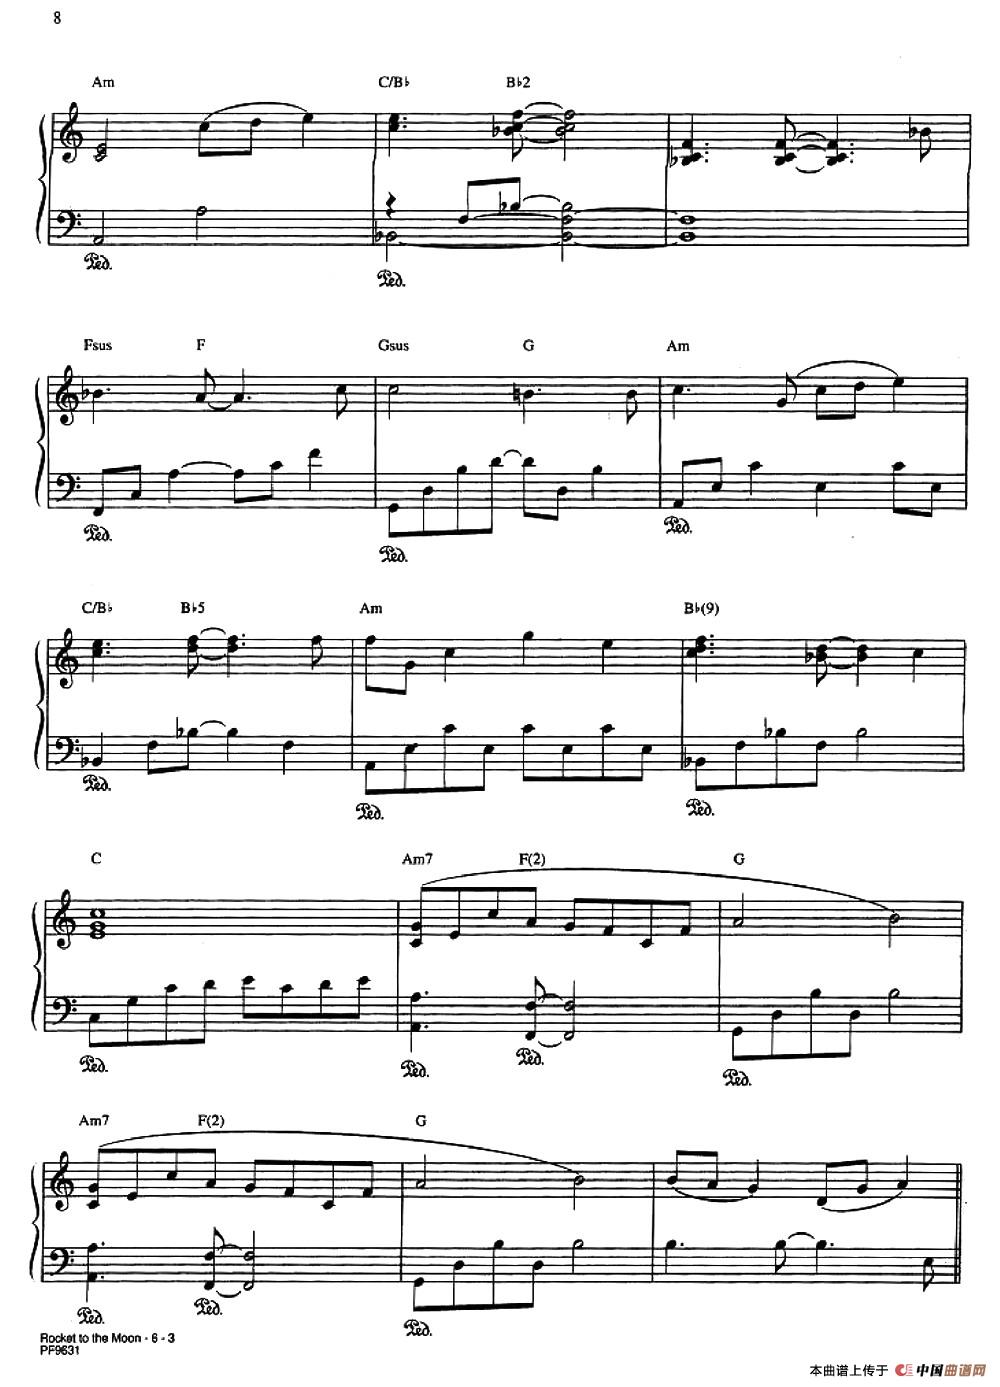 《ROCKET TO THE MOON》钢琴曲谱图分享